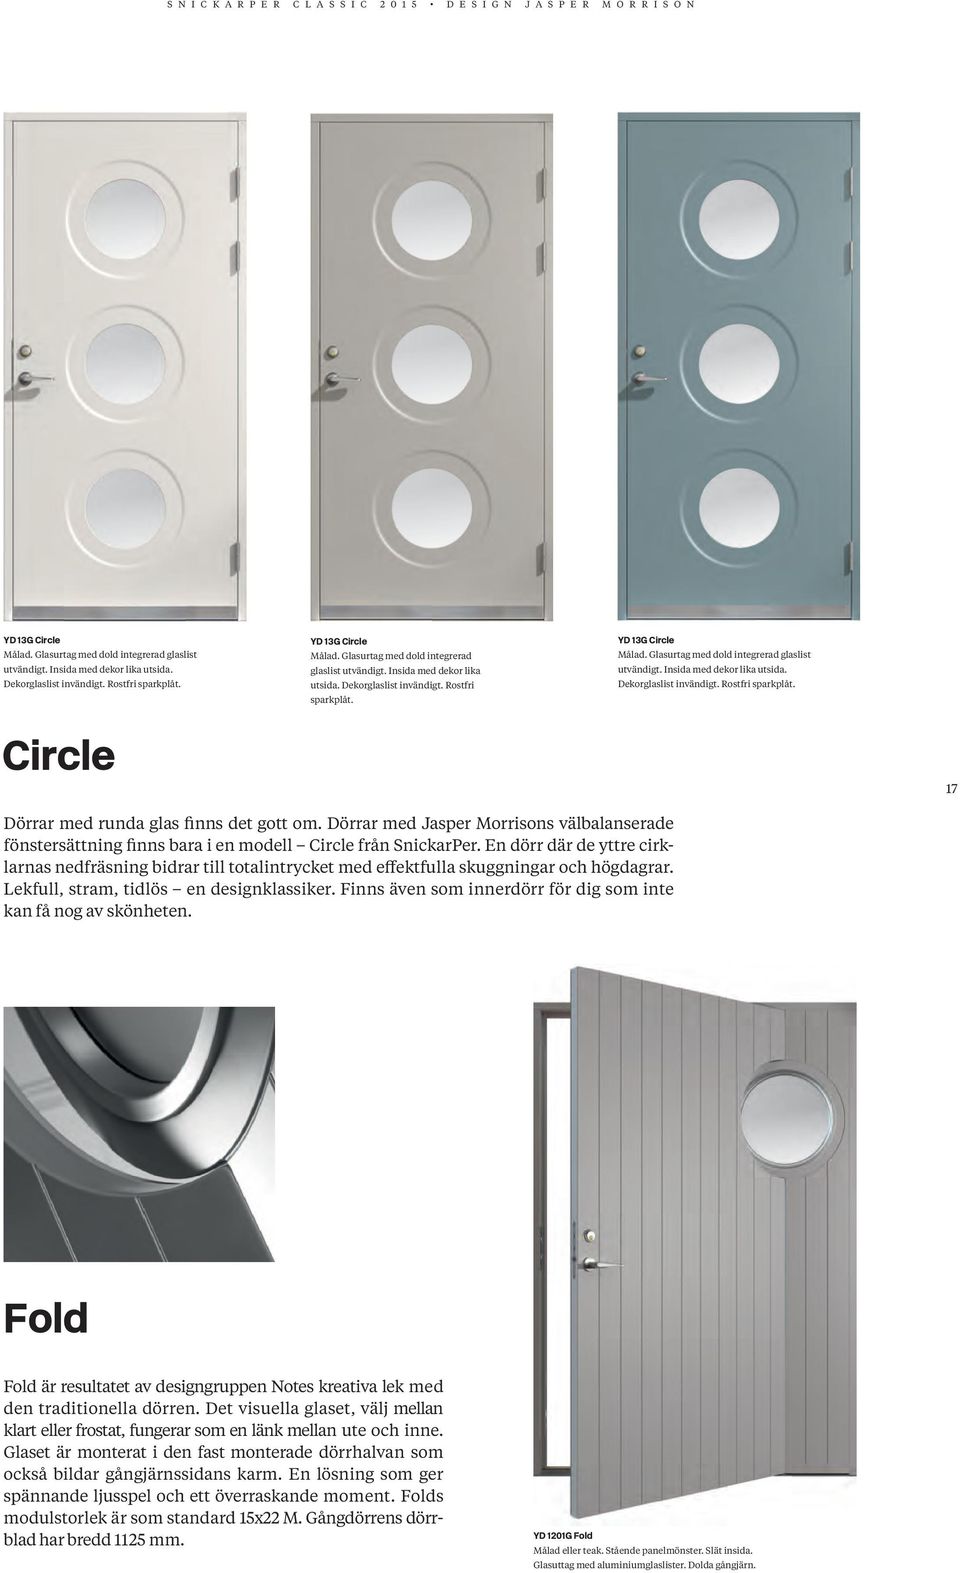 Dörrar med Jasper Morrisons välbalanserade fönster sättning finns bara i en modell Circle från SnickarPer.